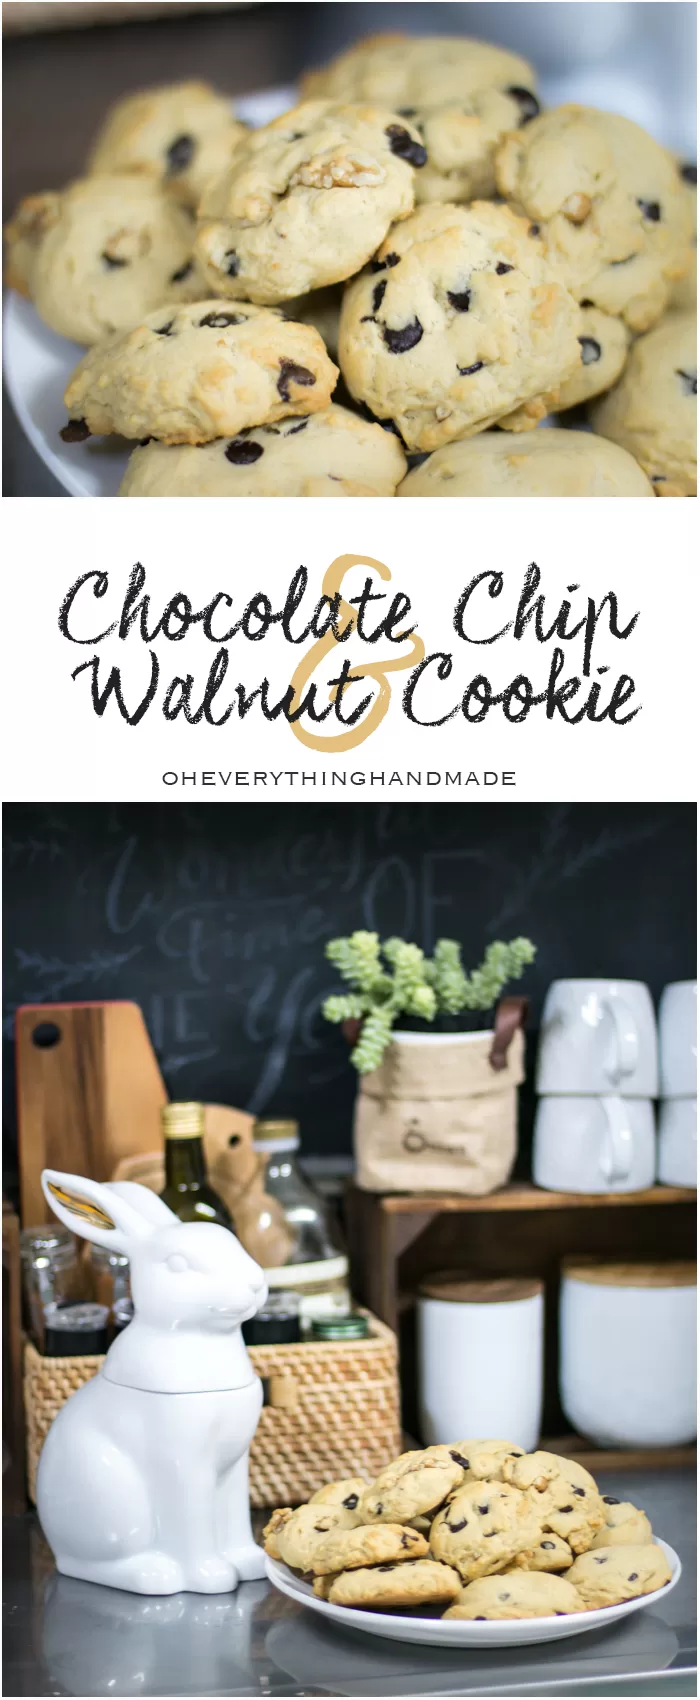 Chocolate Chip & Walnut Cookie - Pinterest